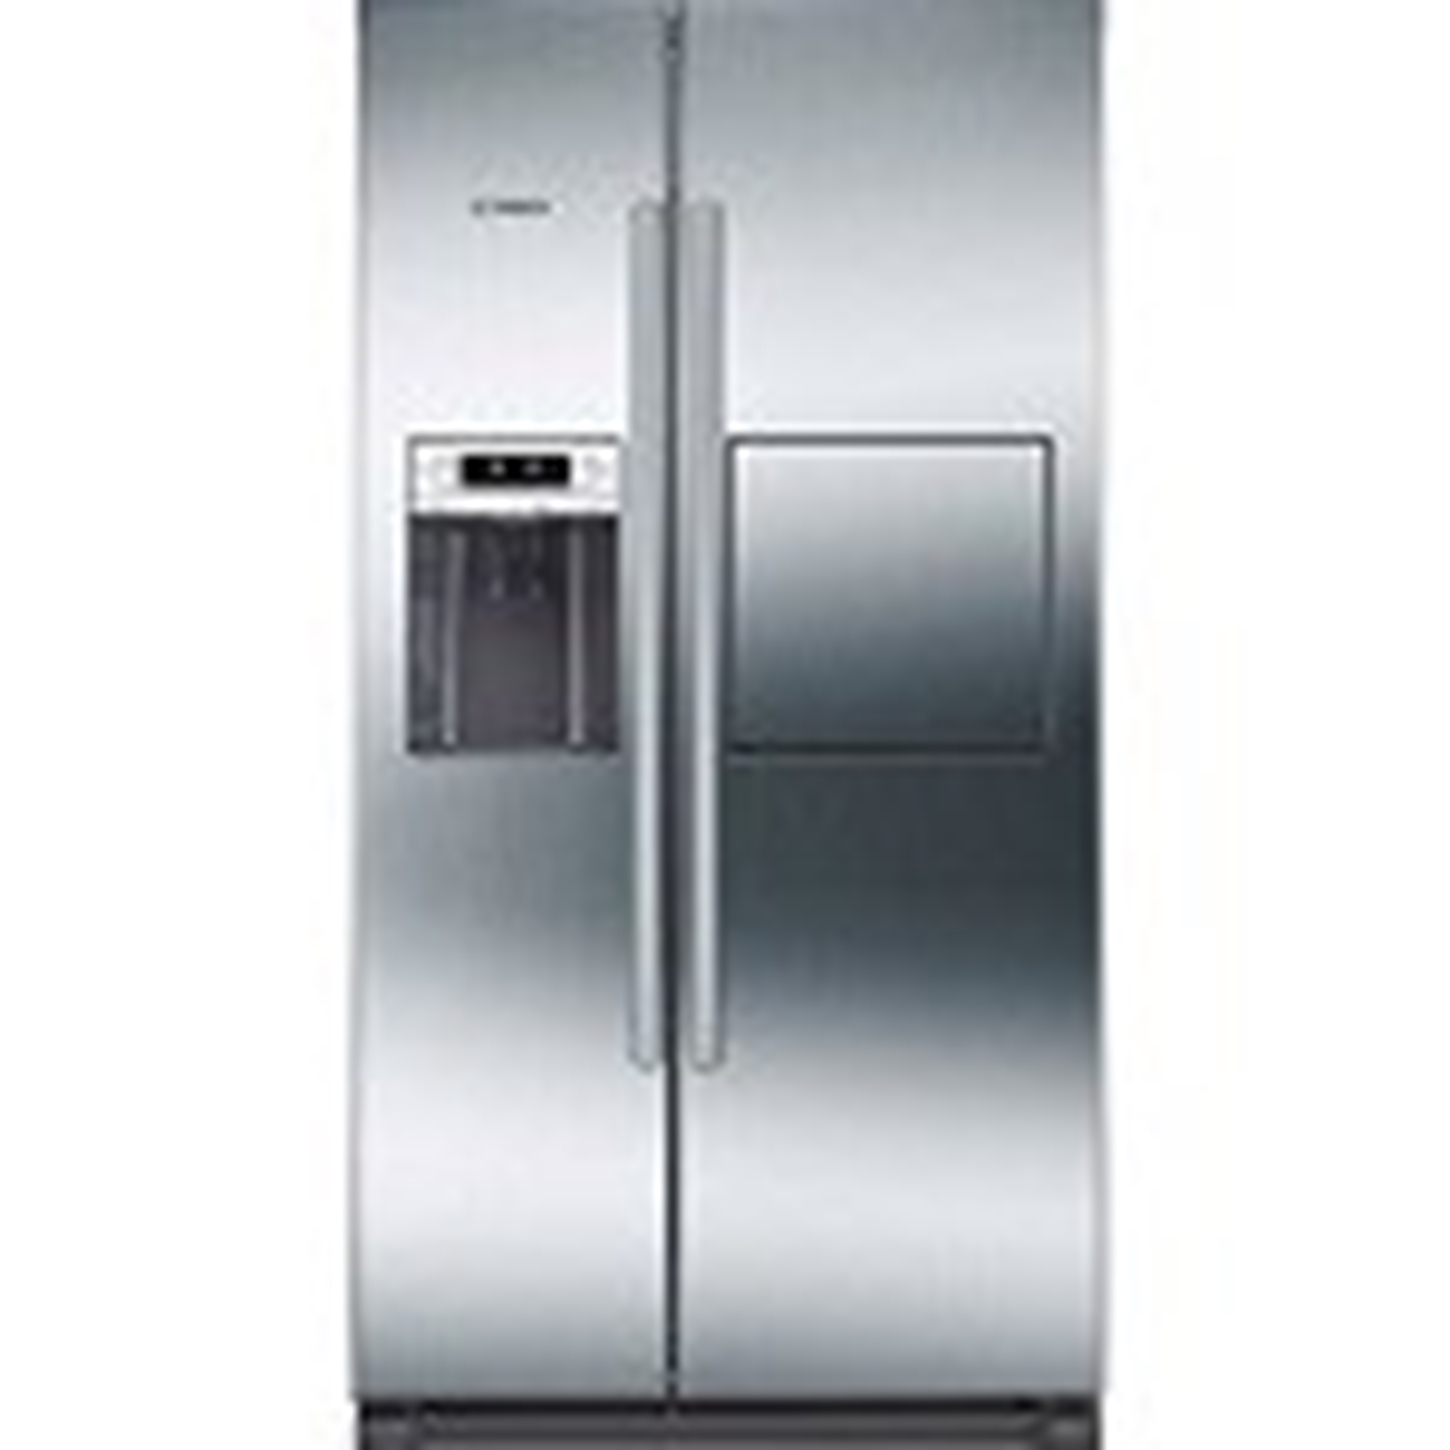 Hình ảnh nhóm sản phẩm Tủ lạnh Bosch